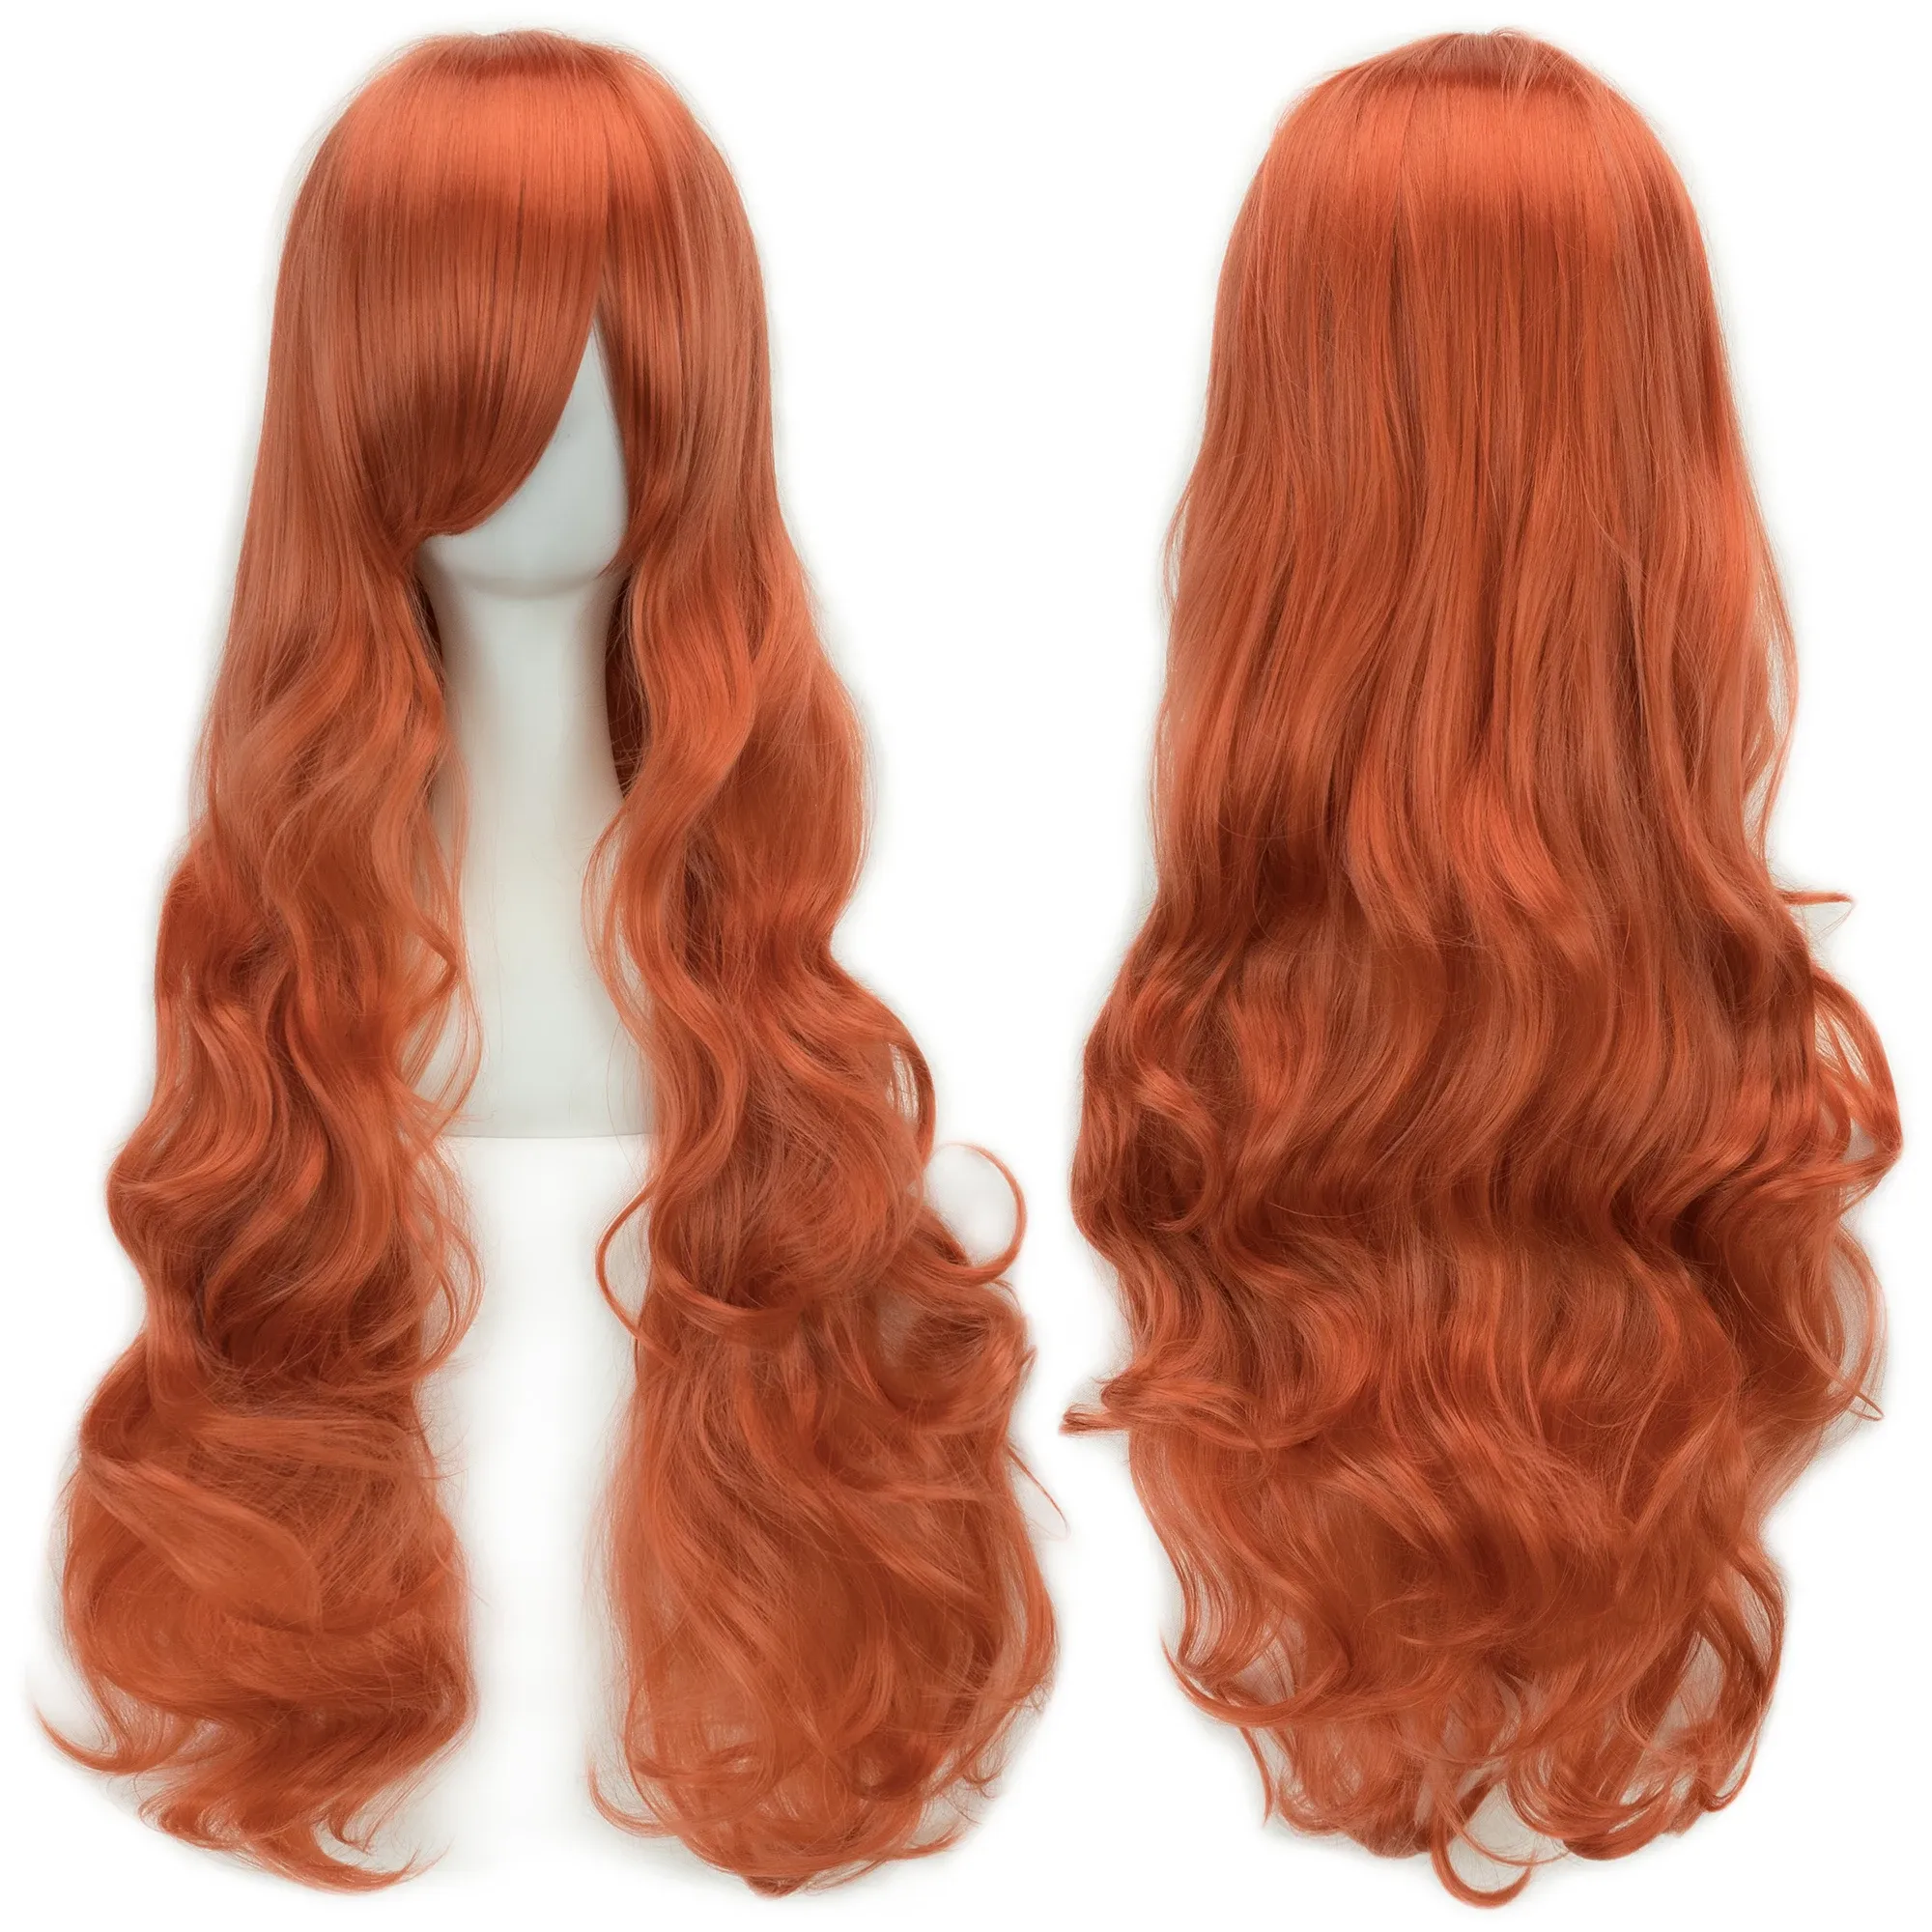 Wigs SOOWEE 20 ЦВЕТИ 32 дюйм Женские парики Синтетические волосы теплостойкие белые черные волнистые парик